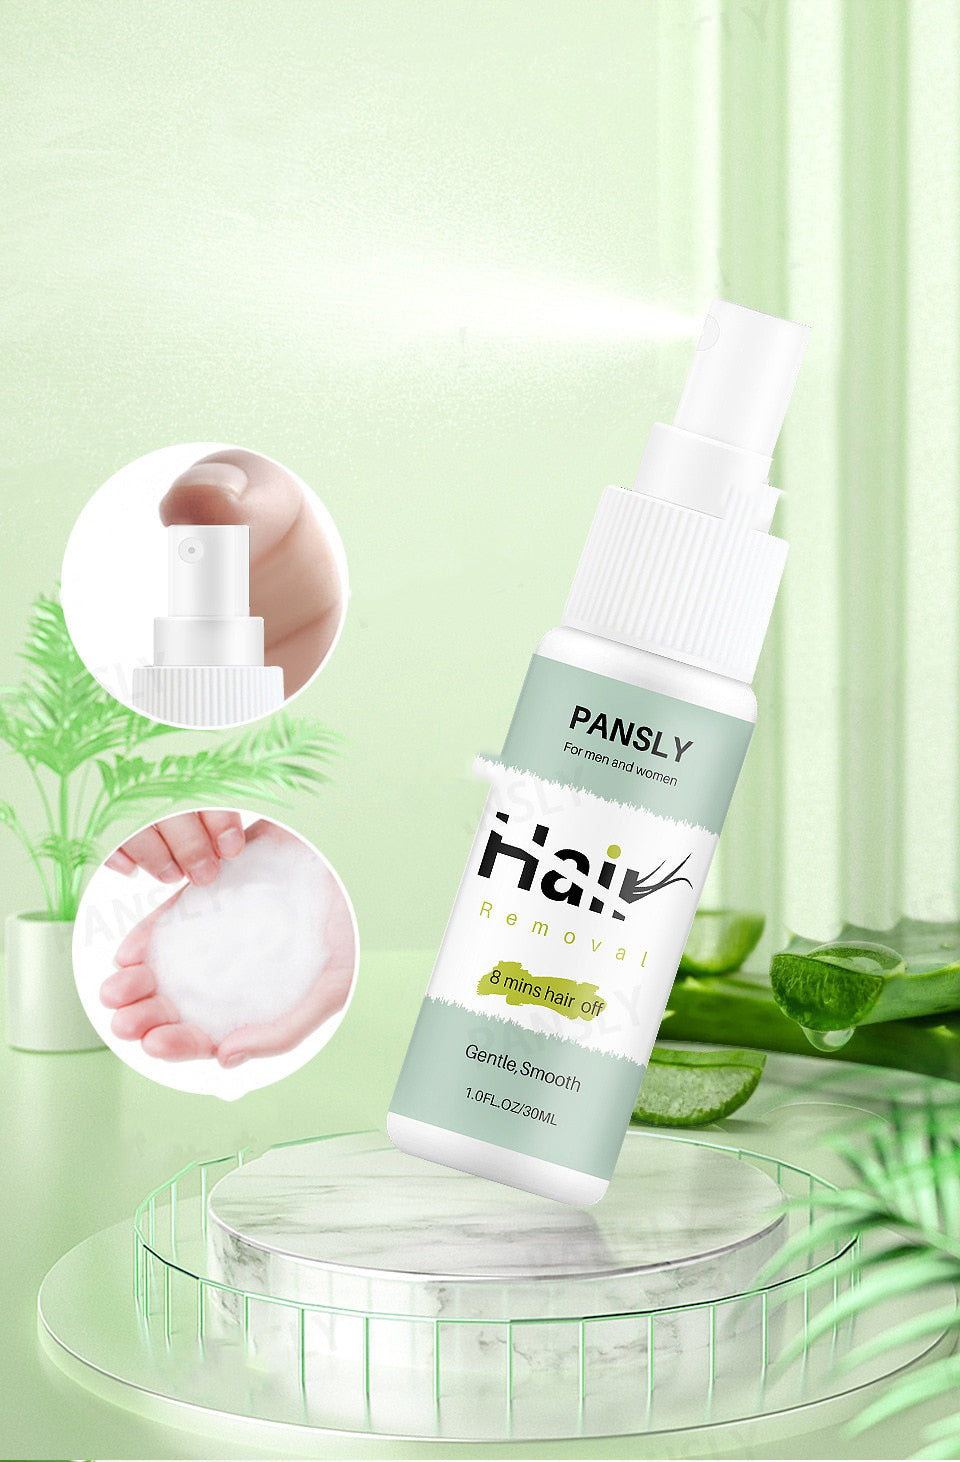 Pansly™ - 100% Natürliches Haarentfernungsspray | 1+1 GRATIS